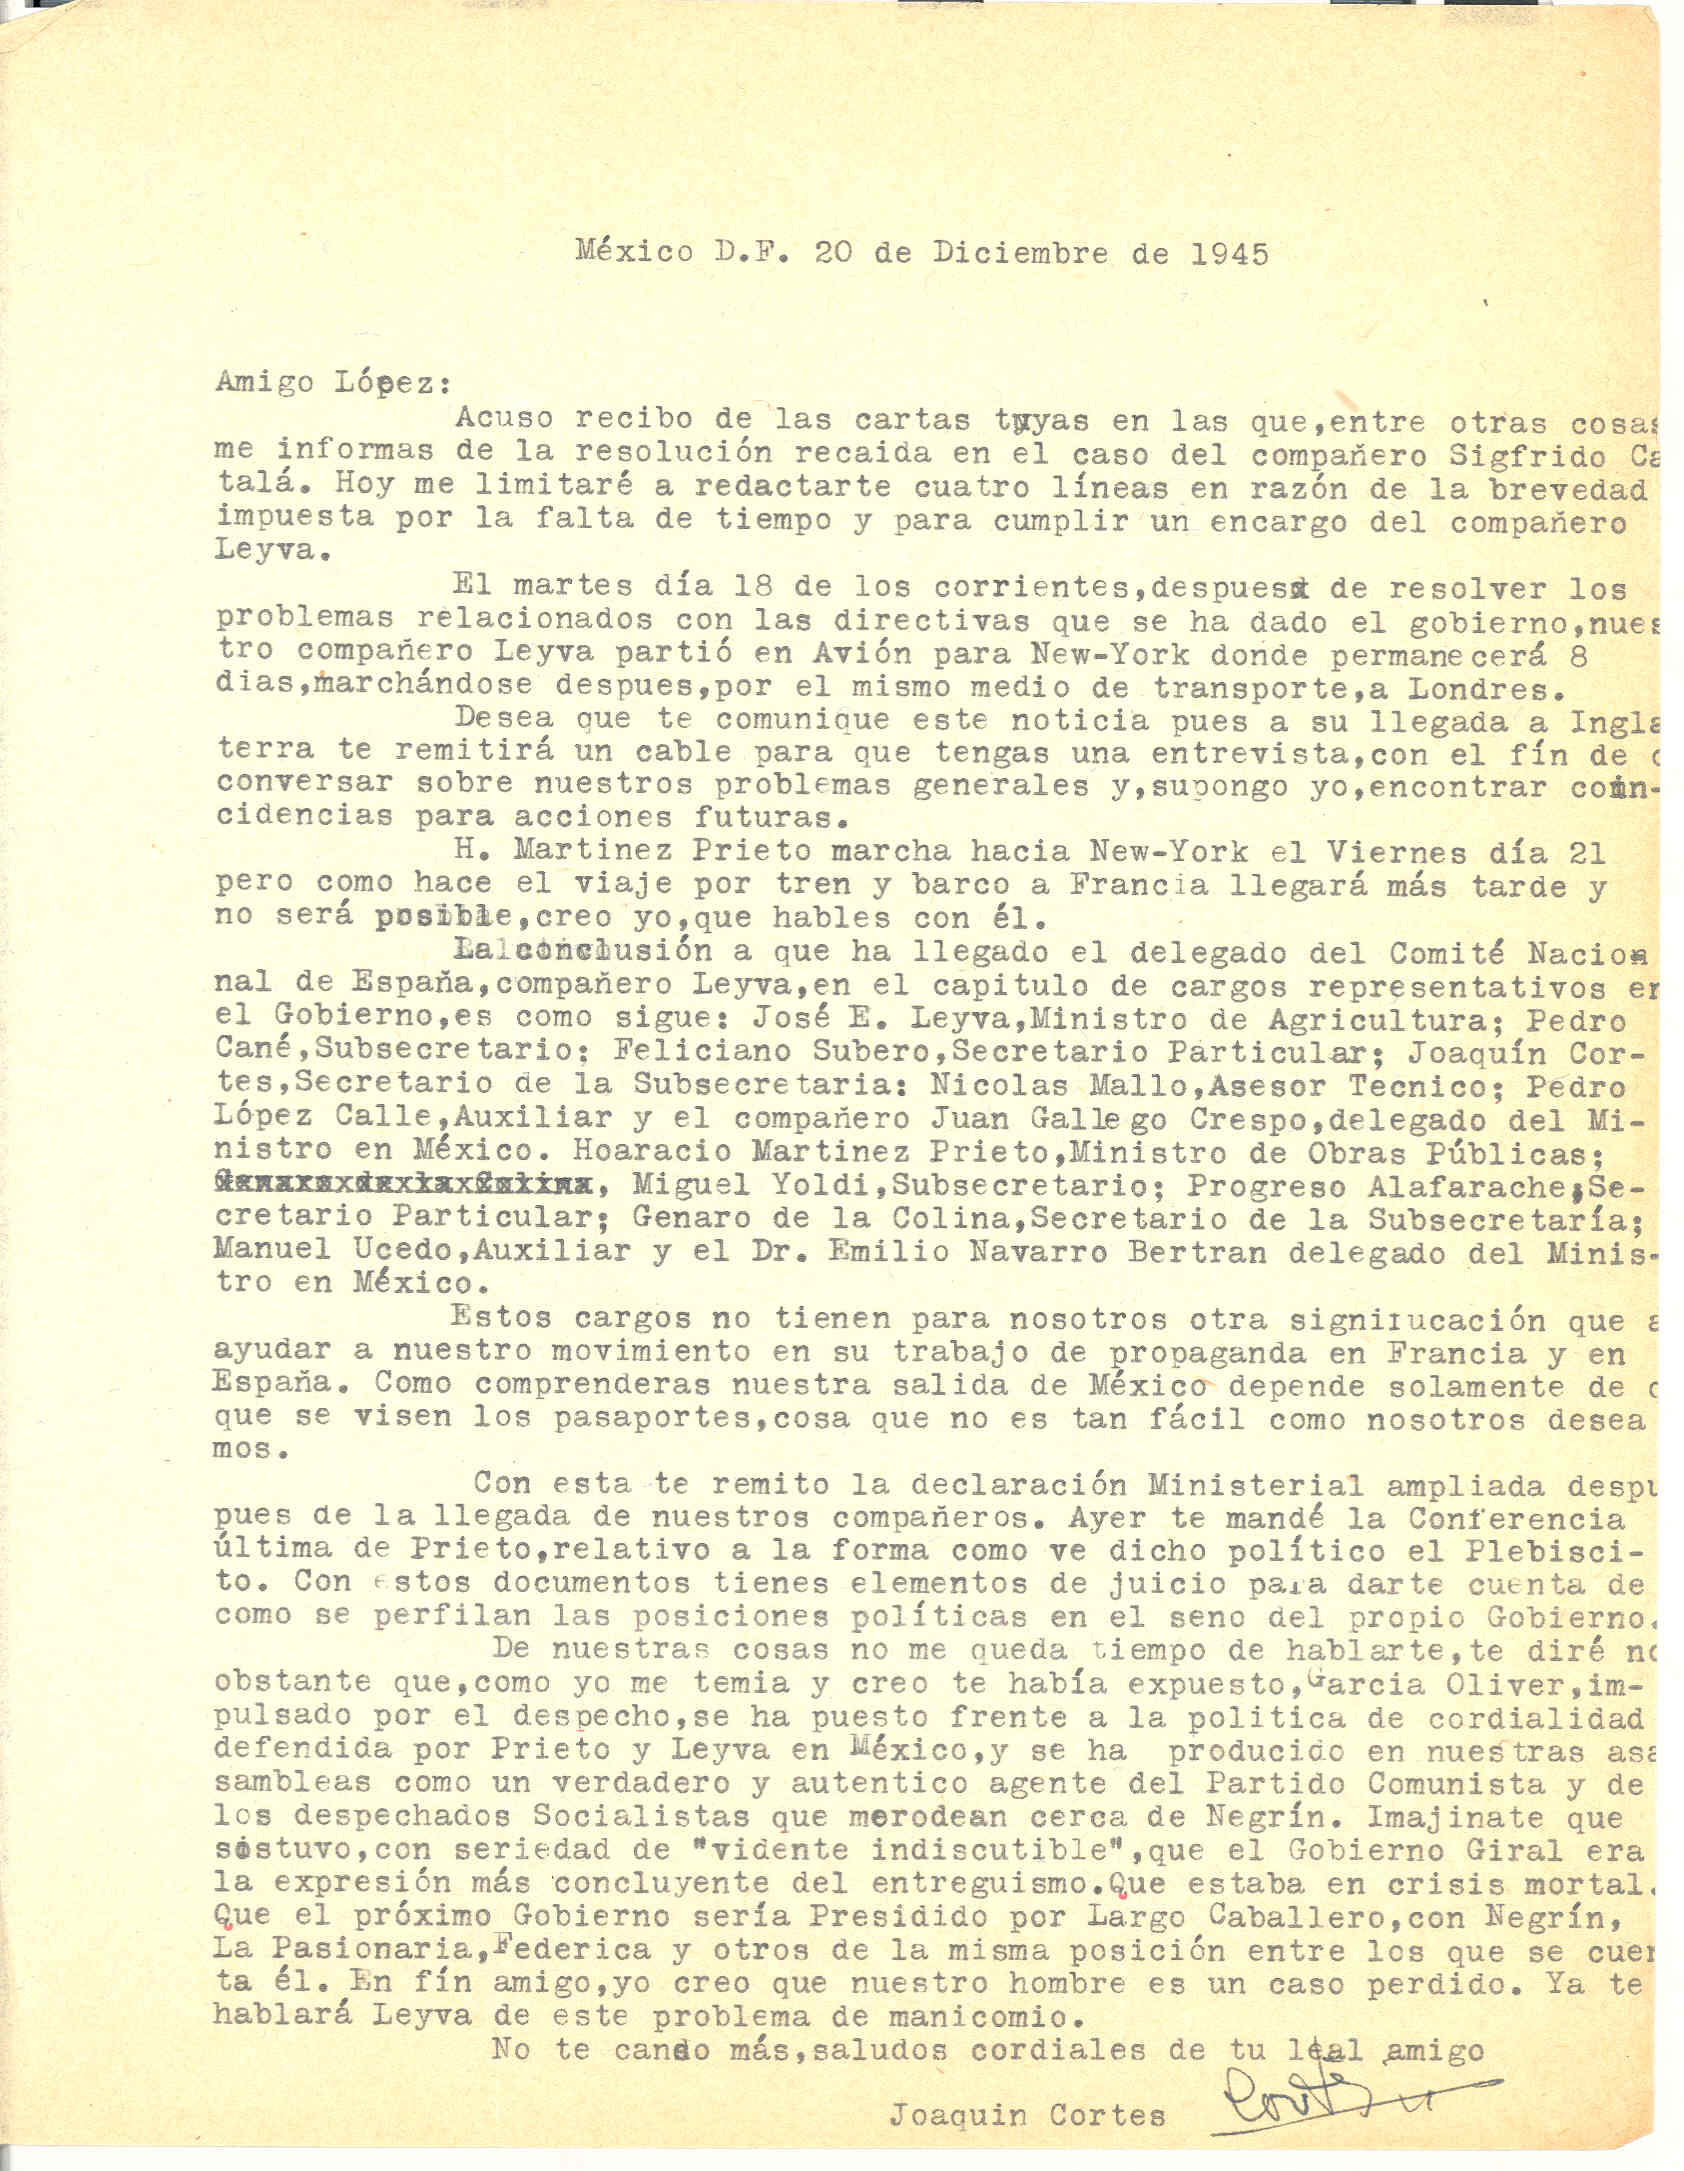 Carta de Joaquín Cortés anunciando los cargos representativos de la CNT nombrados por Leiva y cuenta la oposición de García Oliver ante la política de Leiva y Prieto.